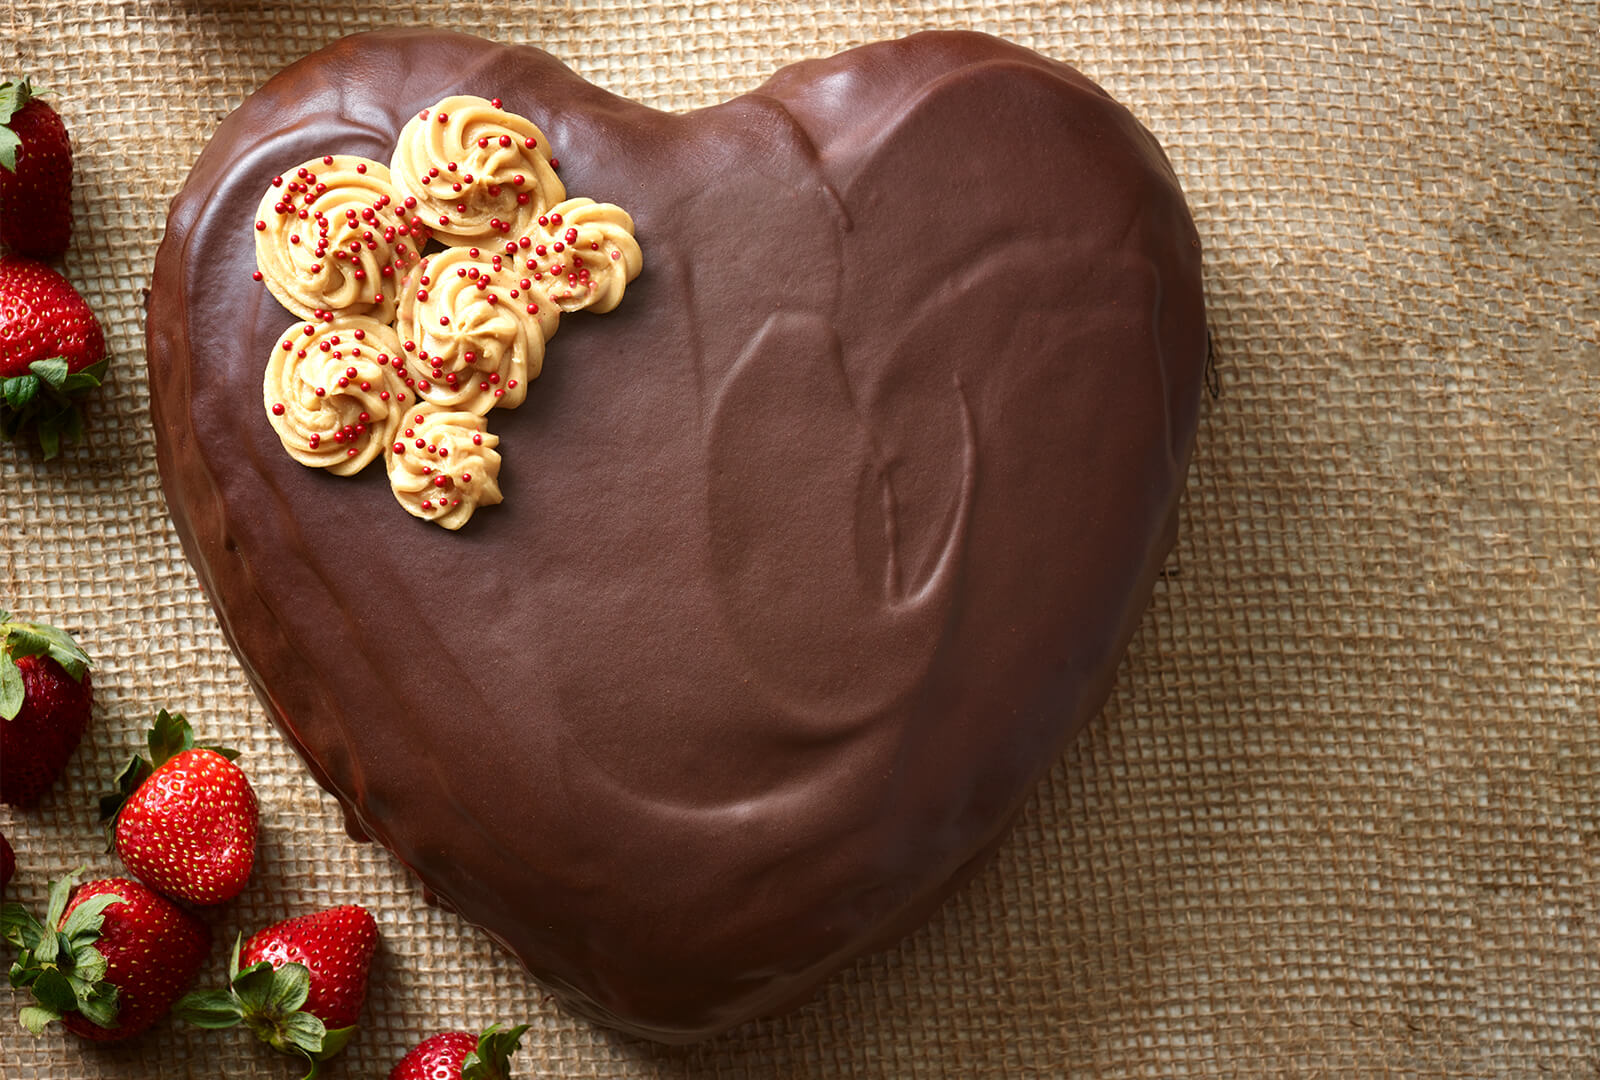 heart shaped chocolate cake